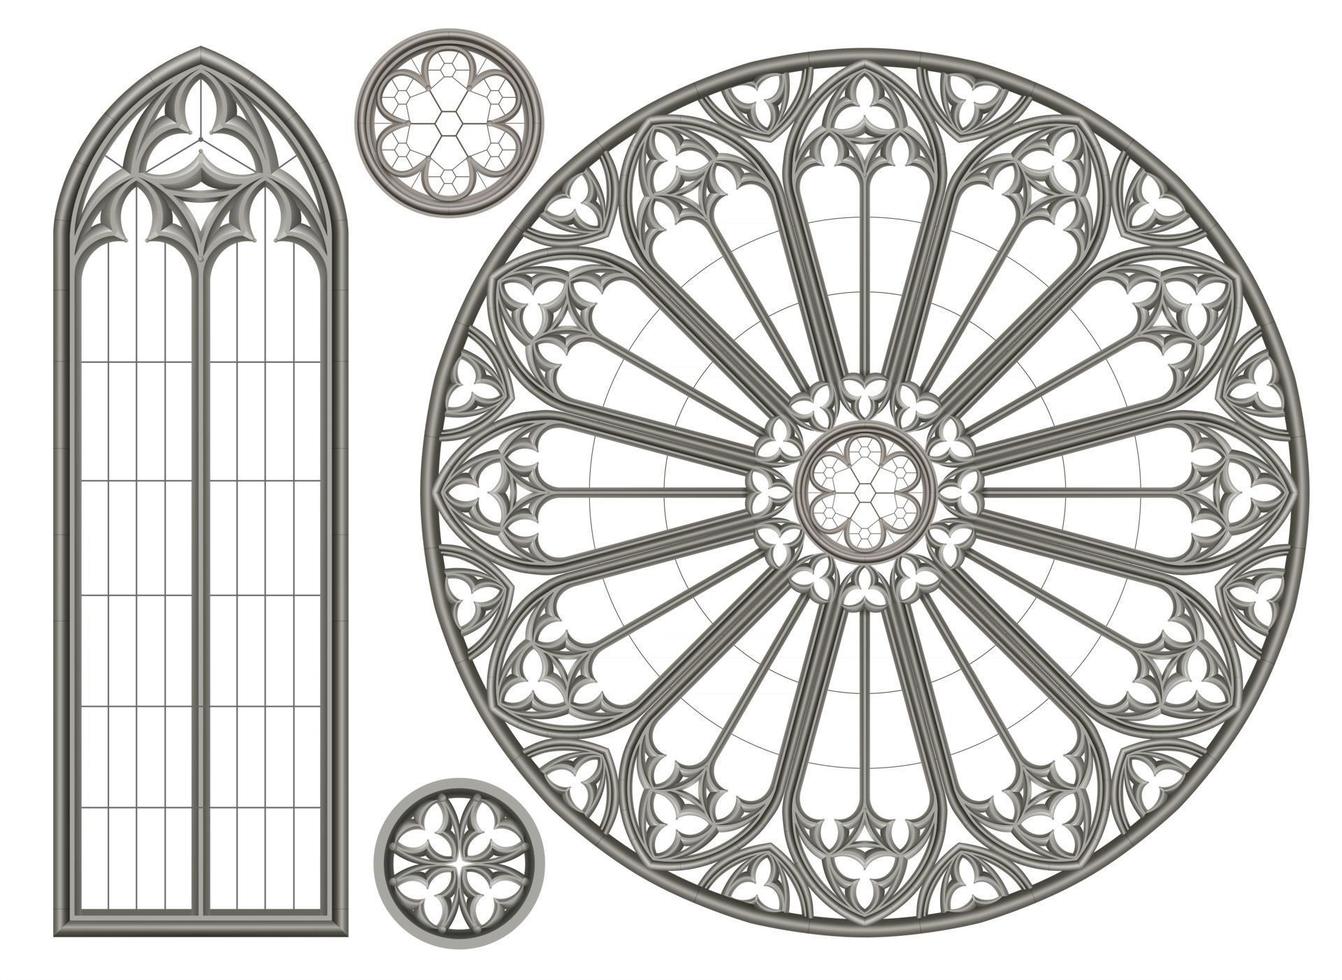 gotisch middeleeuws glas-in-loodraam vector